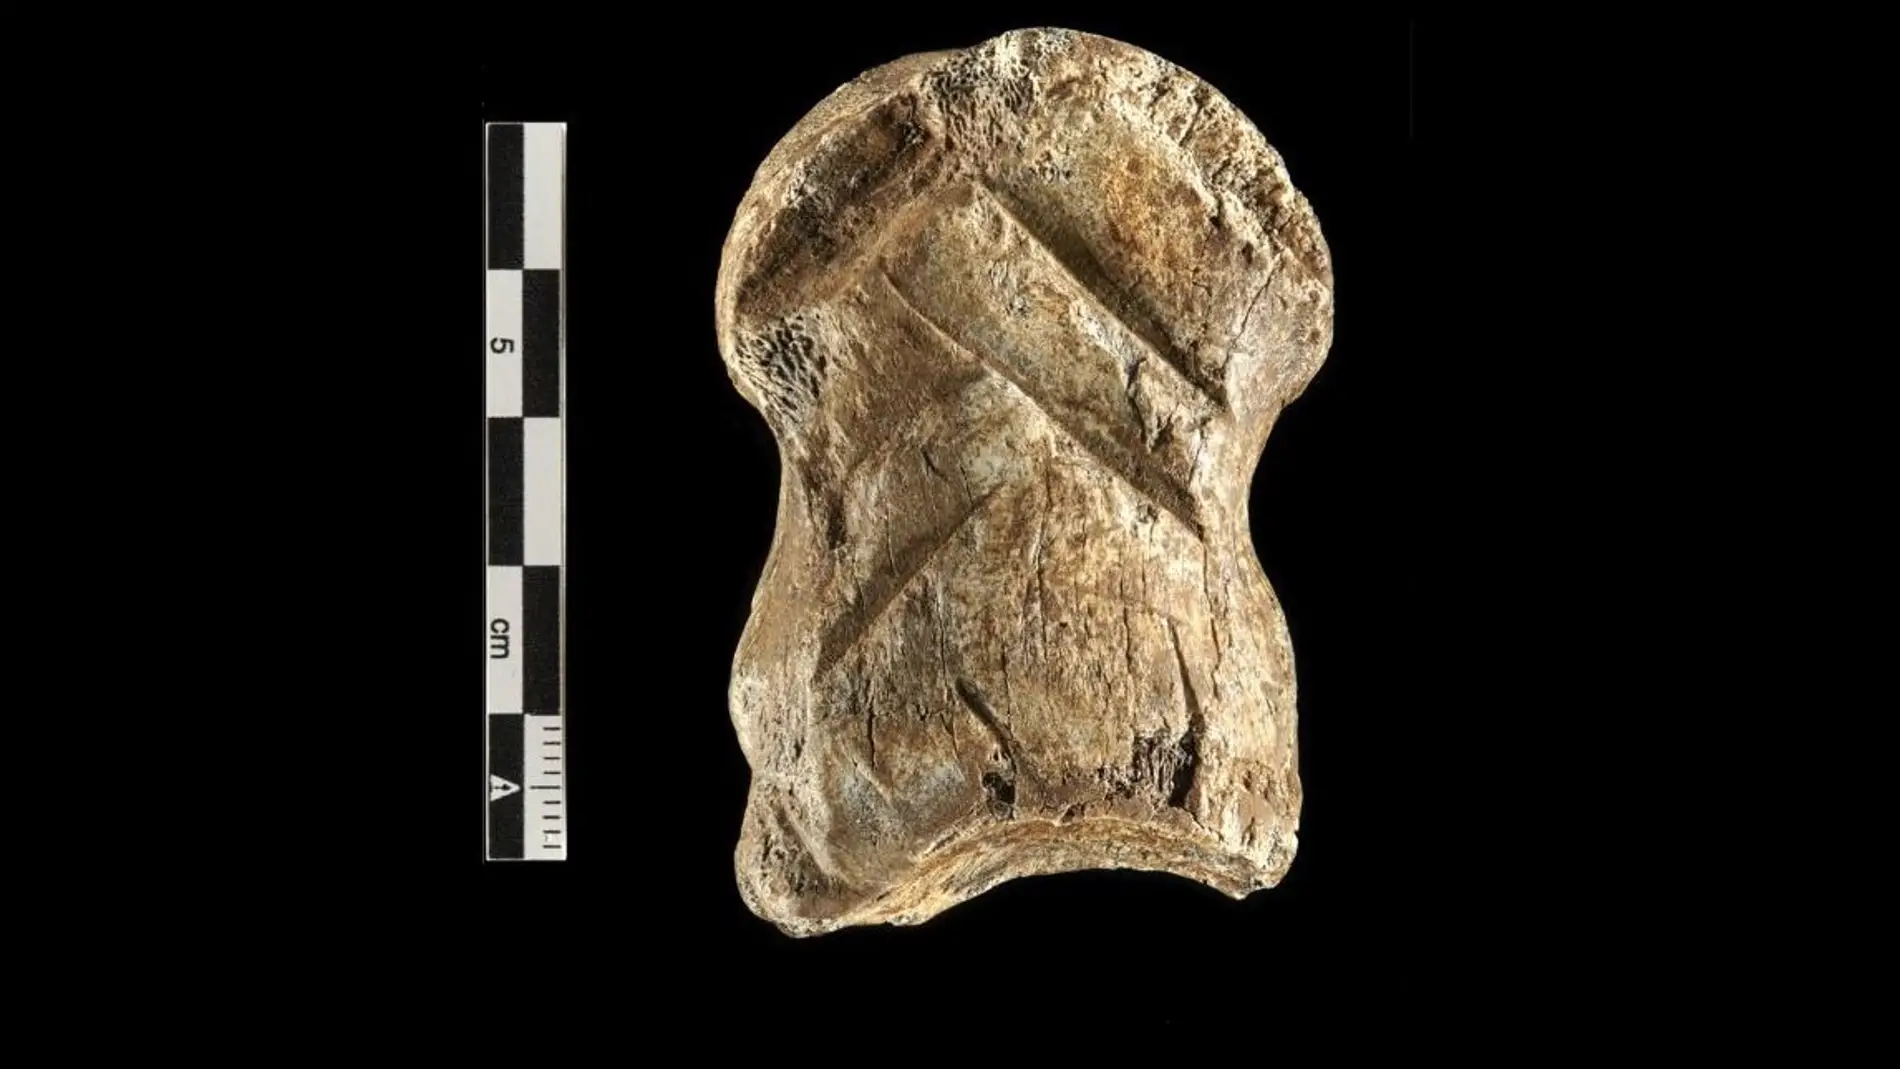 Habla un hueso tallado hace 51.000 anos los neandertales fueron artistas pioneros